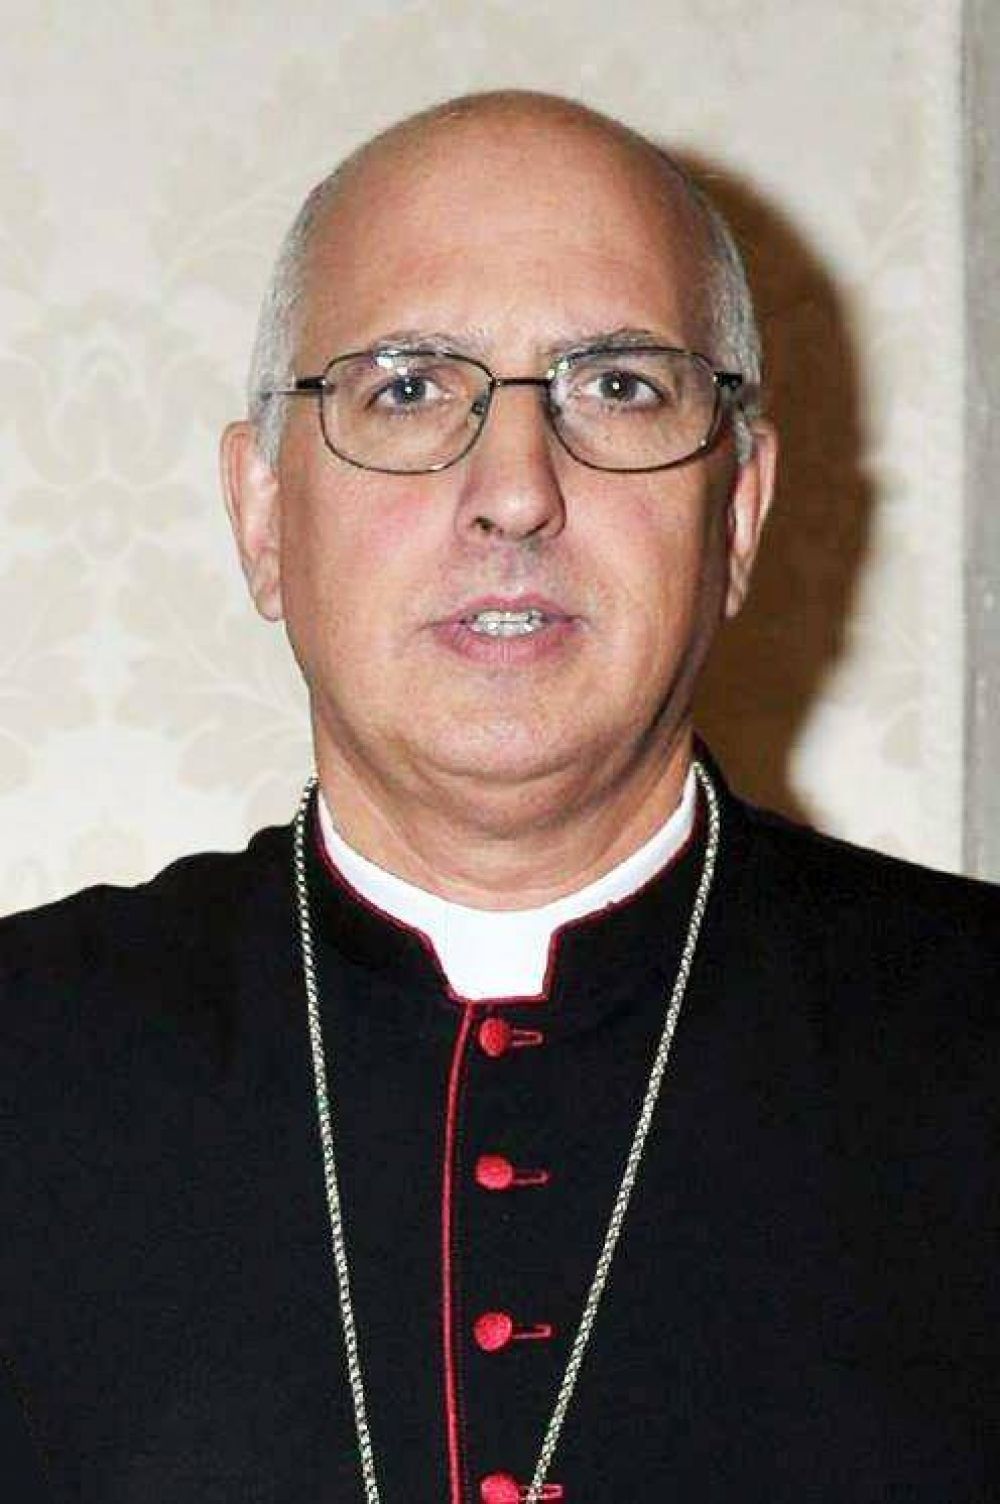 El nuevo obispo castrense dijo que hay que mirar la historia 